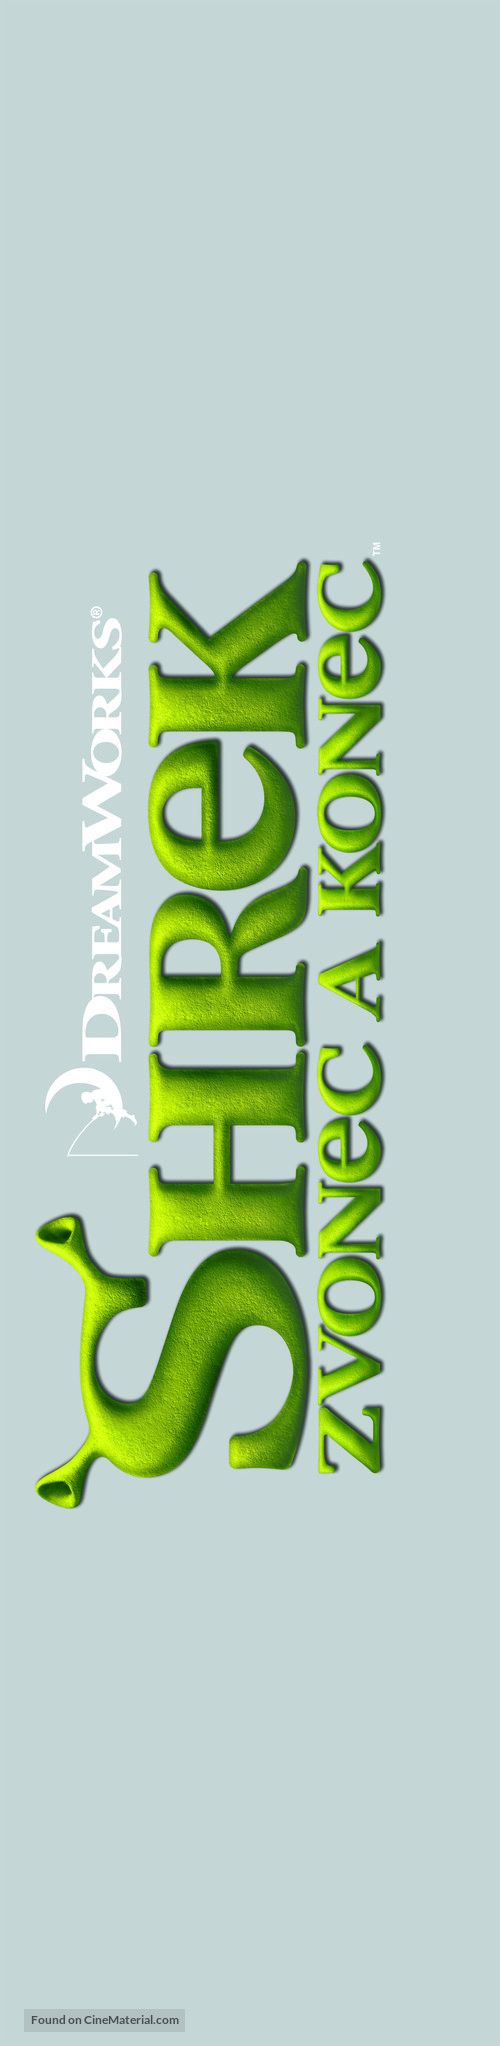 Shrek Forever After - Czech Logo